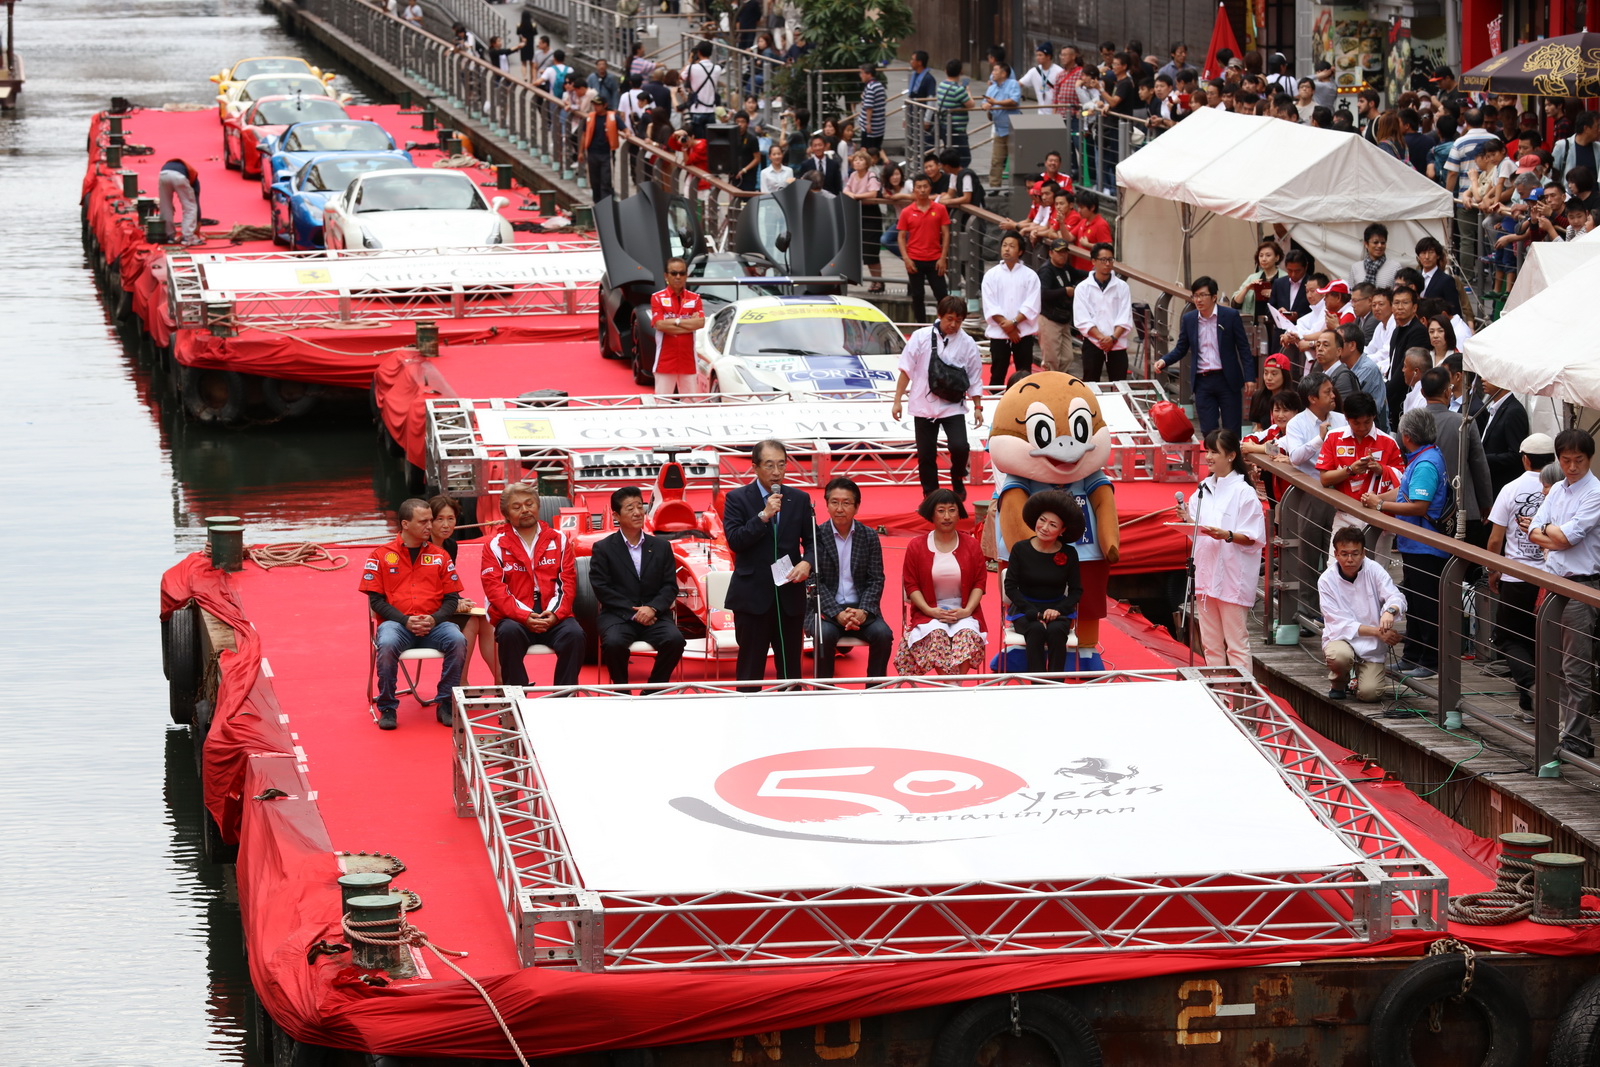 ذراع "فيراري" اليابانية تحتفل بالذكرى الخمسين لها بمهرجان نهري Ferrari 1